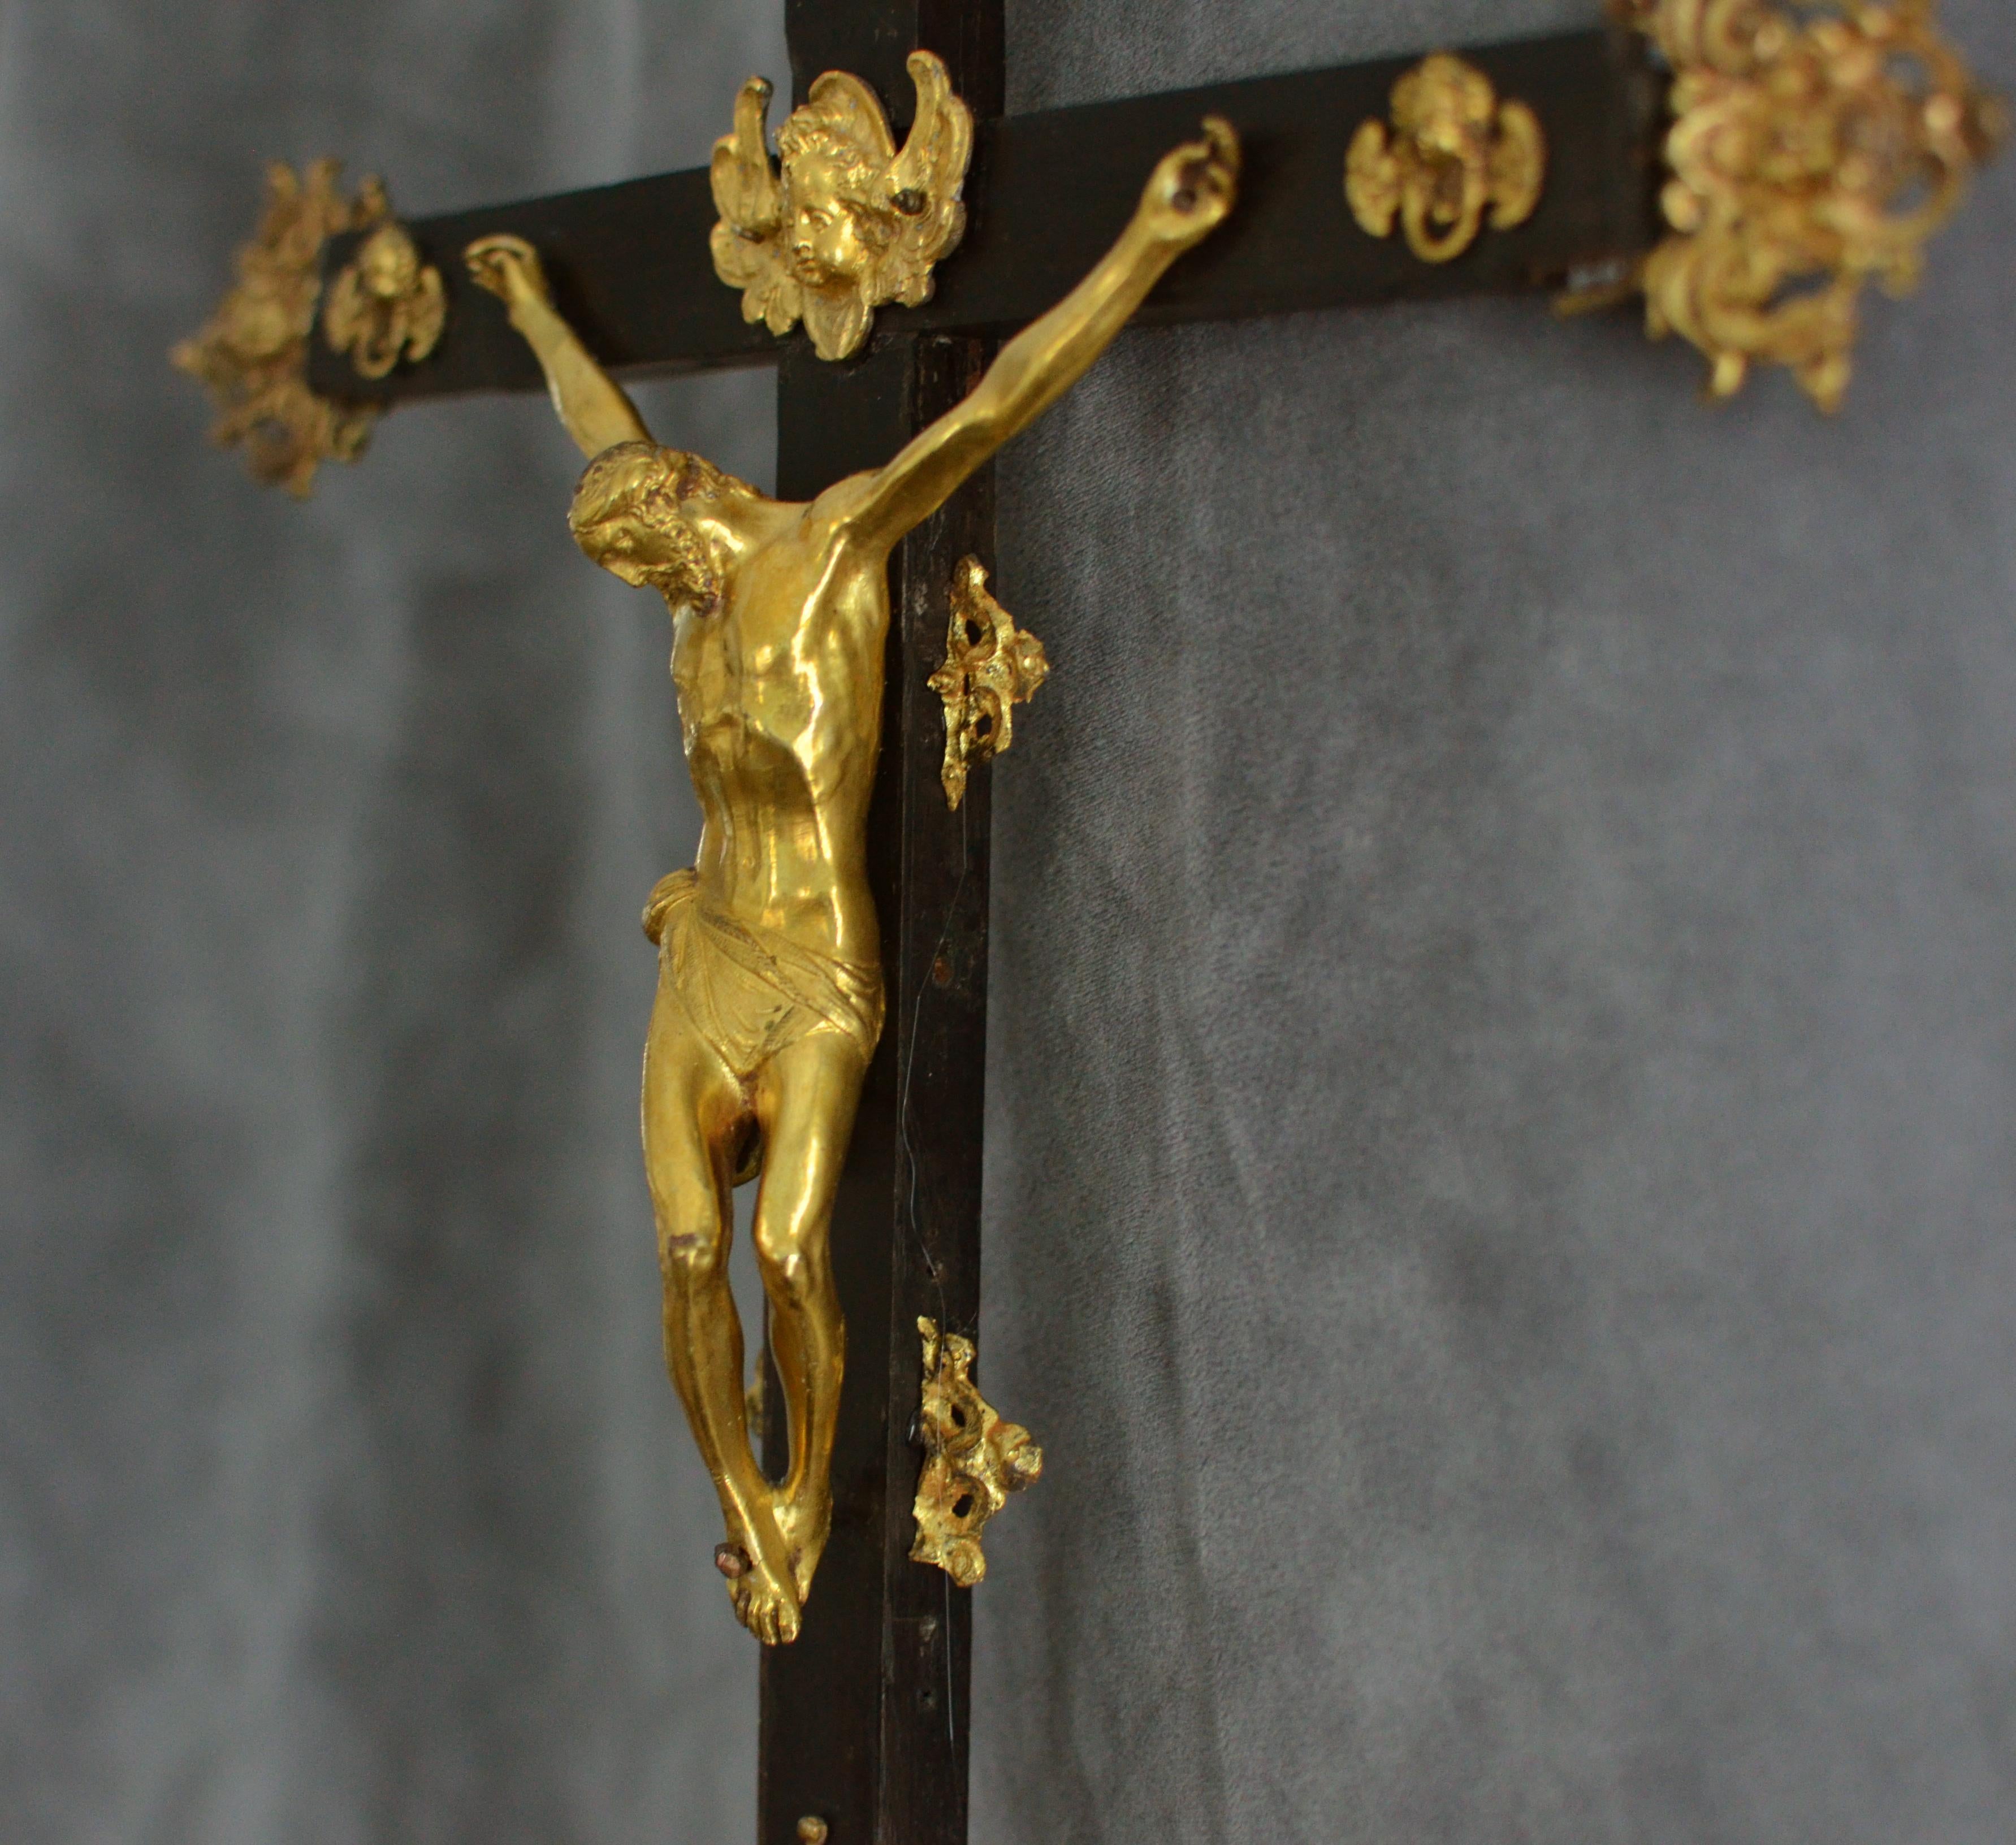 Ein römisches Altarkreuz aus dem 17. Jahrhundert nach Guglielmo della Porta

Ungefähre Größe: 67 x 27 cm

Das vorliegende Altarkreuz, das wahrscheinlich römisch-italienischen Ursprungs ist, stellt eine Christusfigur aus vergoldeter Bronze dar, die